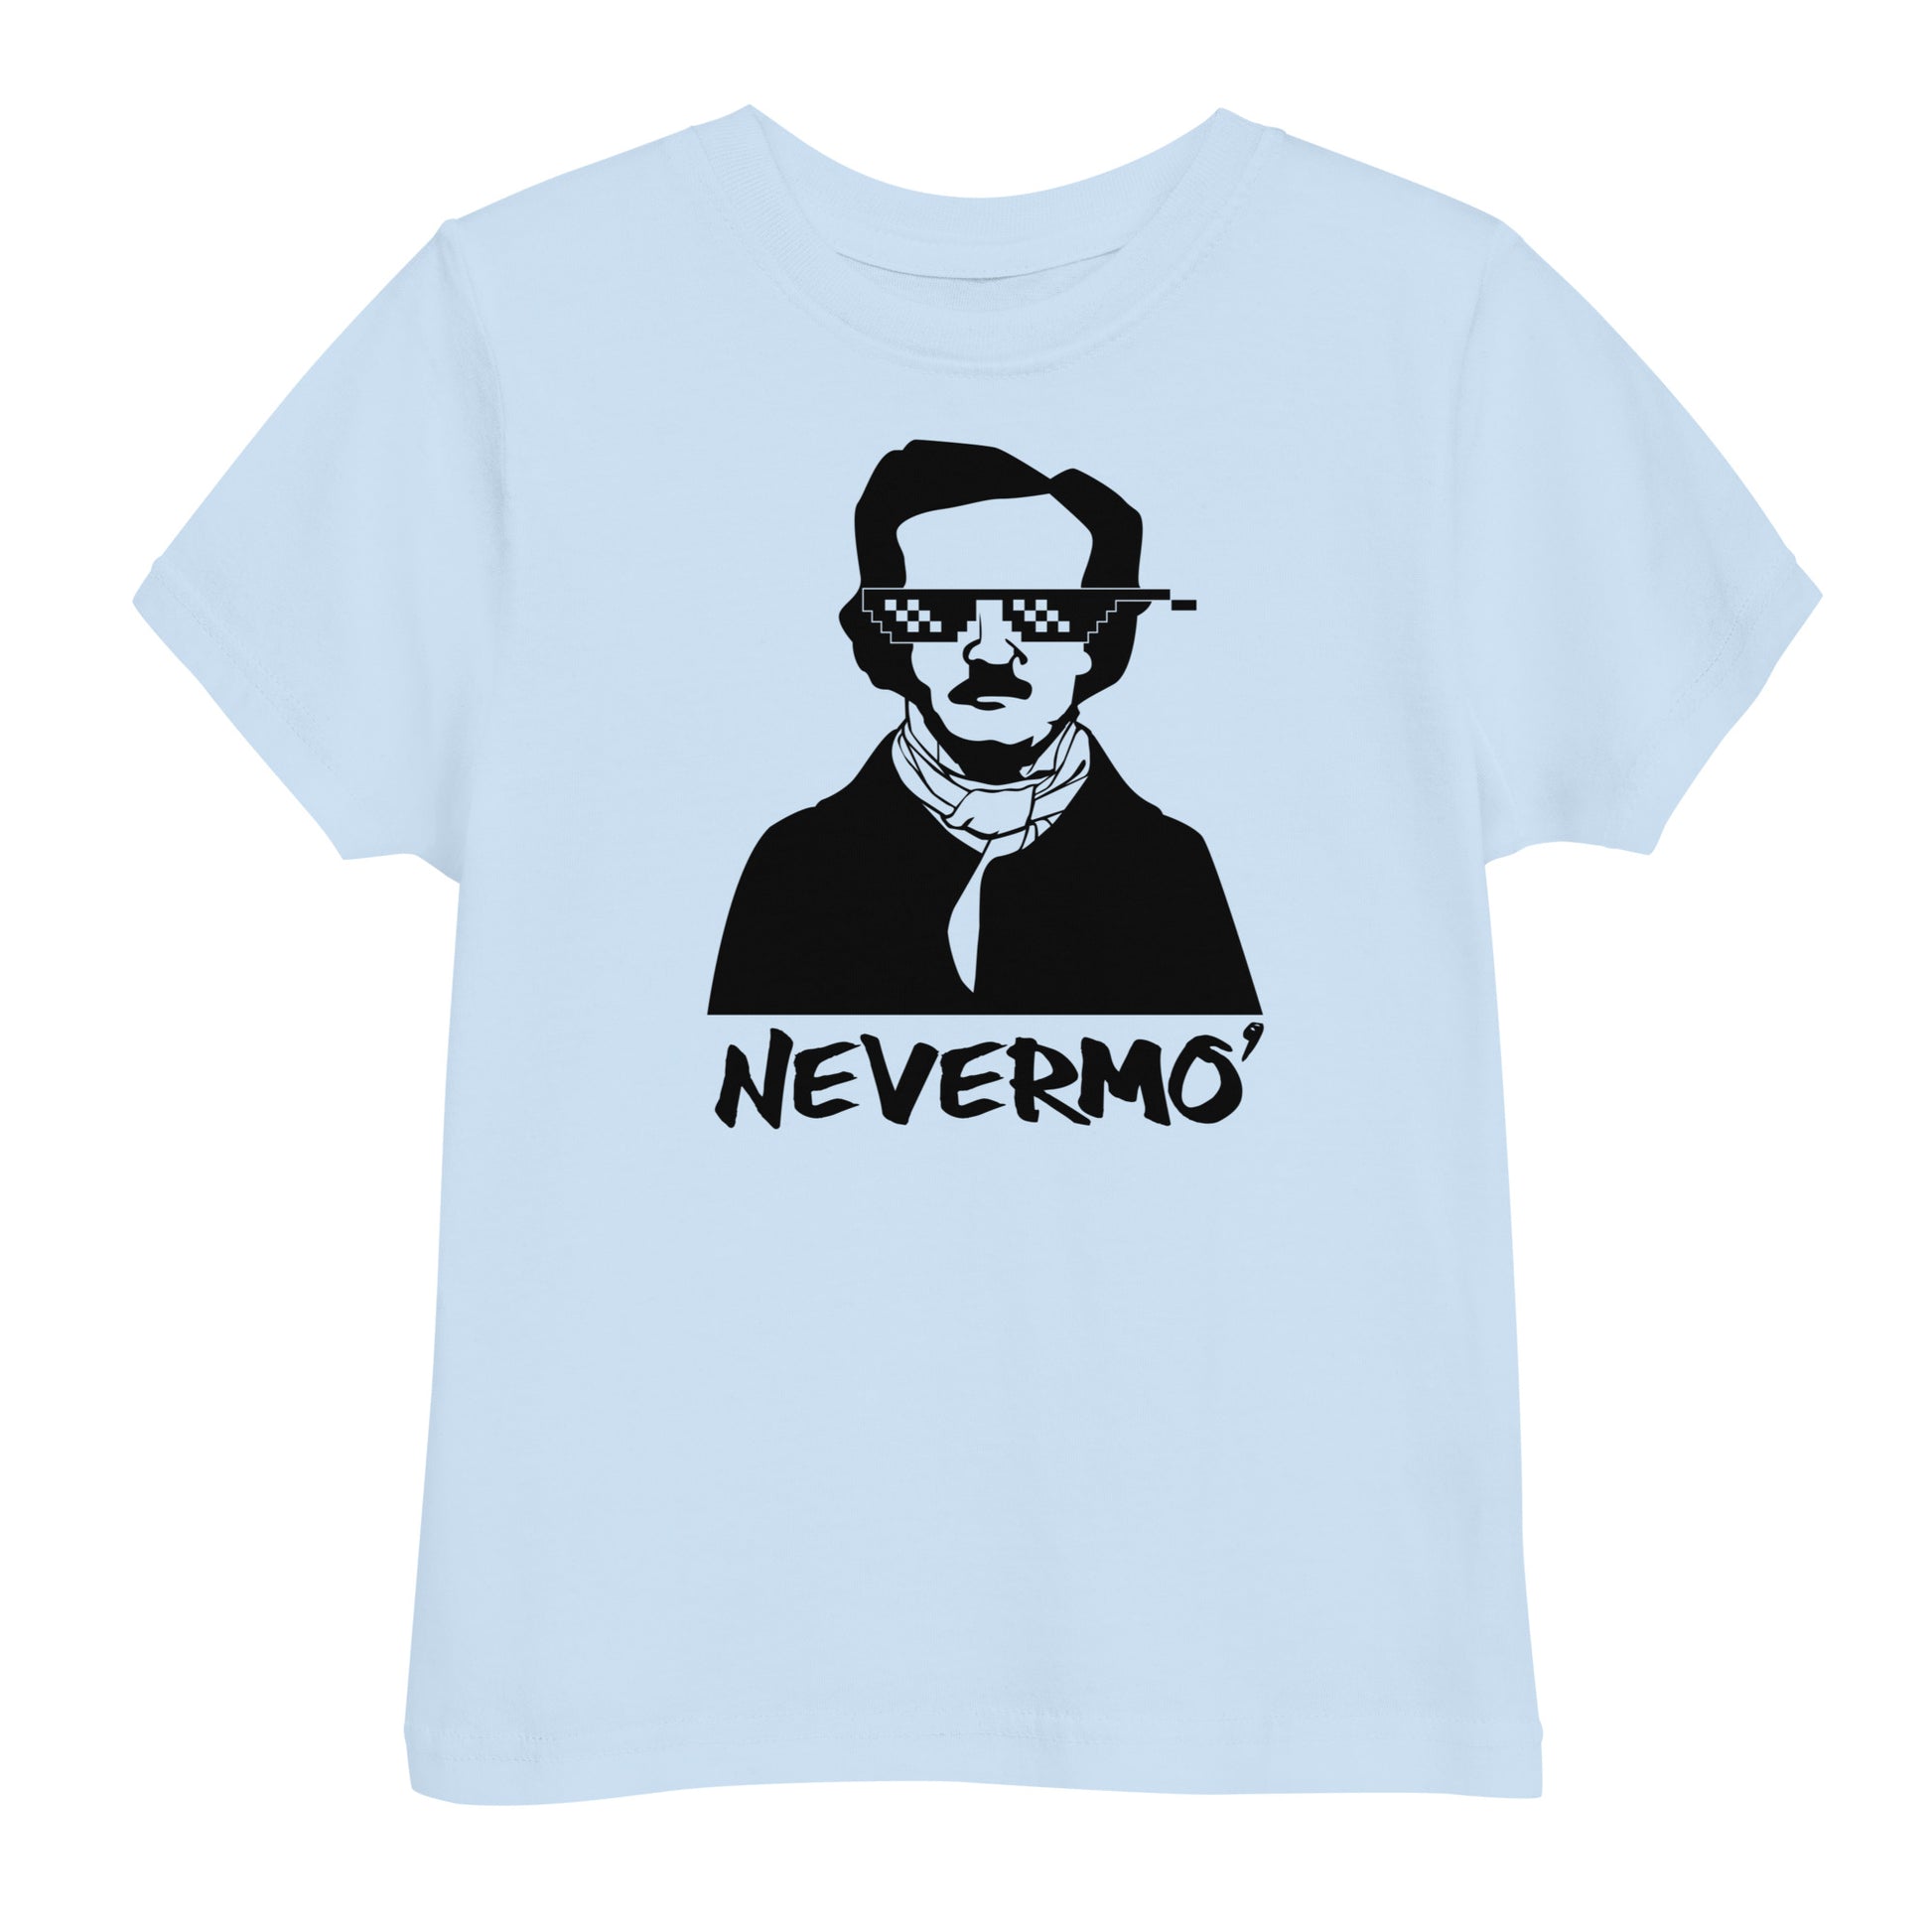 Toddler Edgar Allan Poe "Nevermo" jersey t-shirt - Light Blue Front